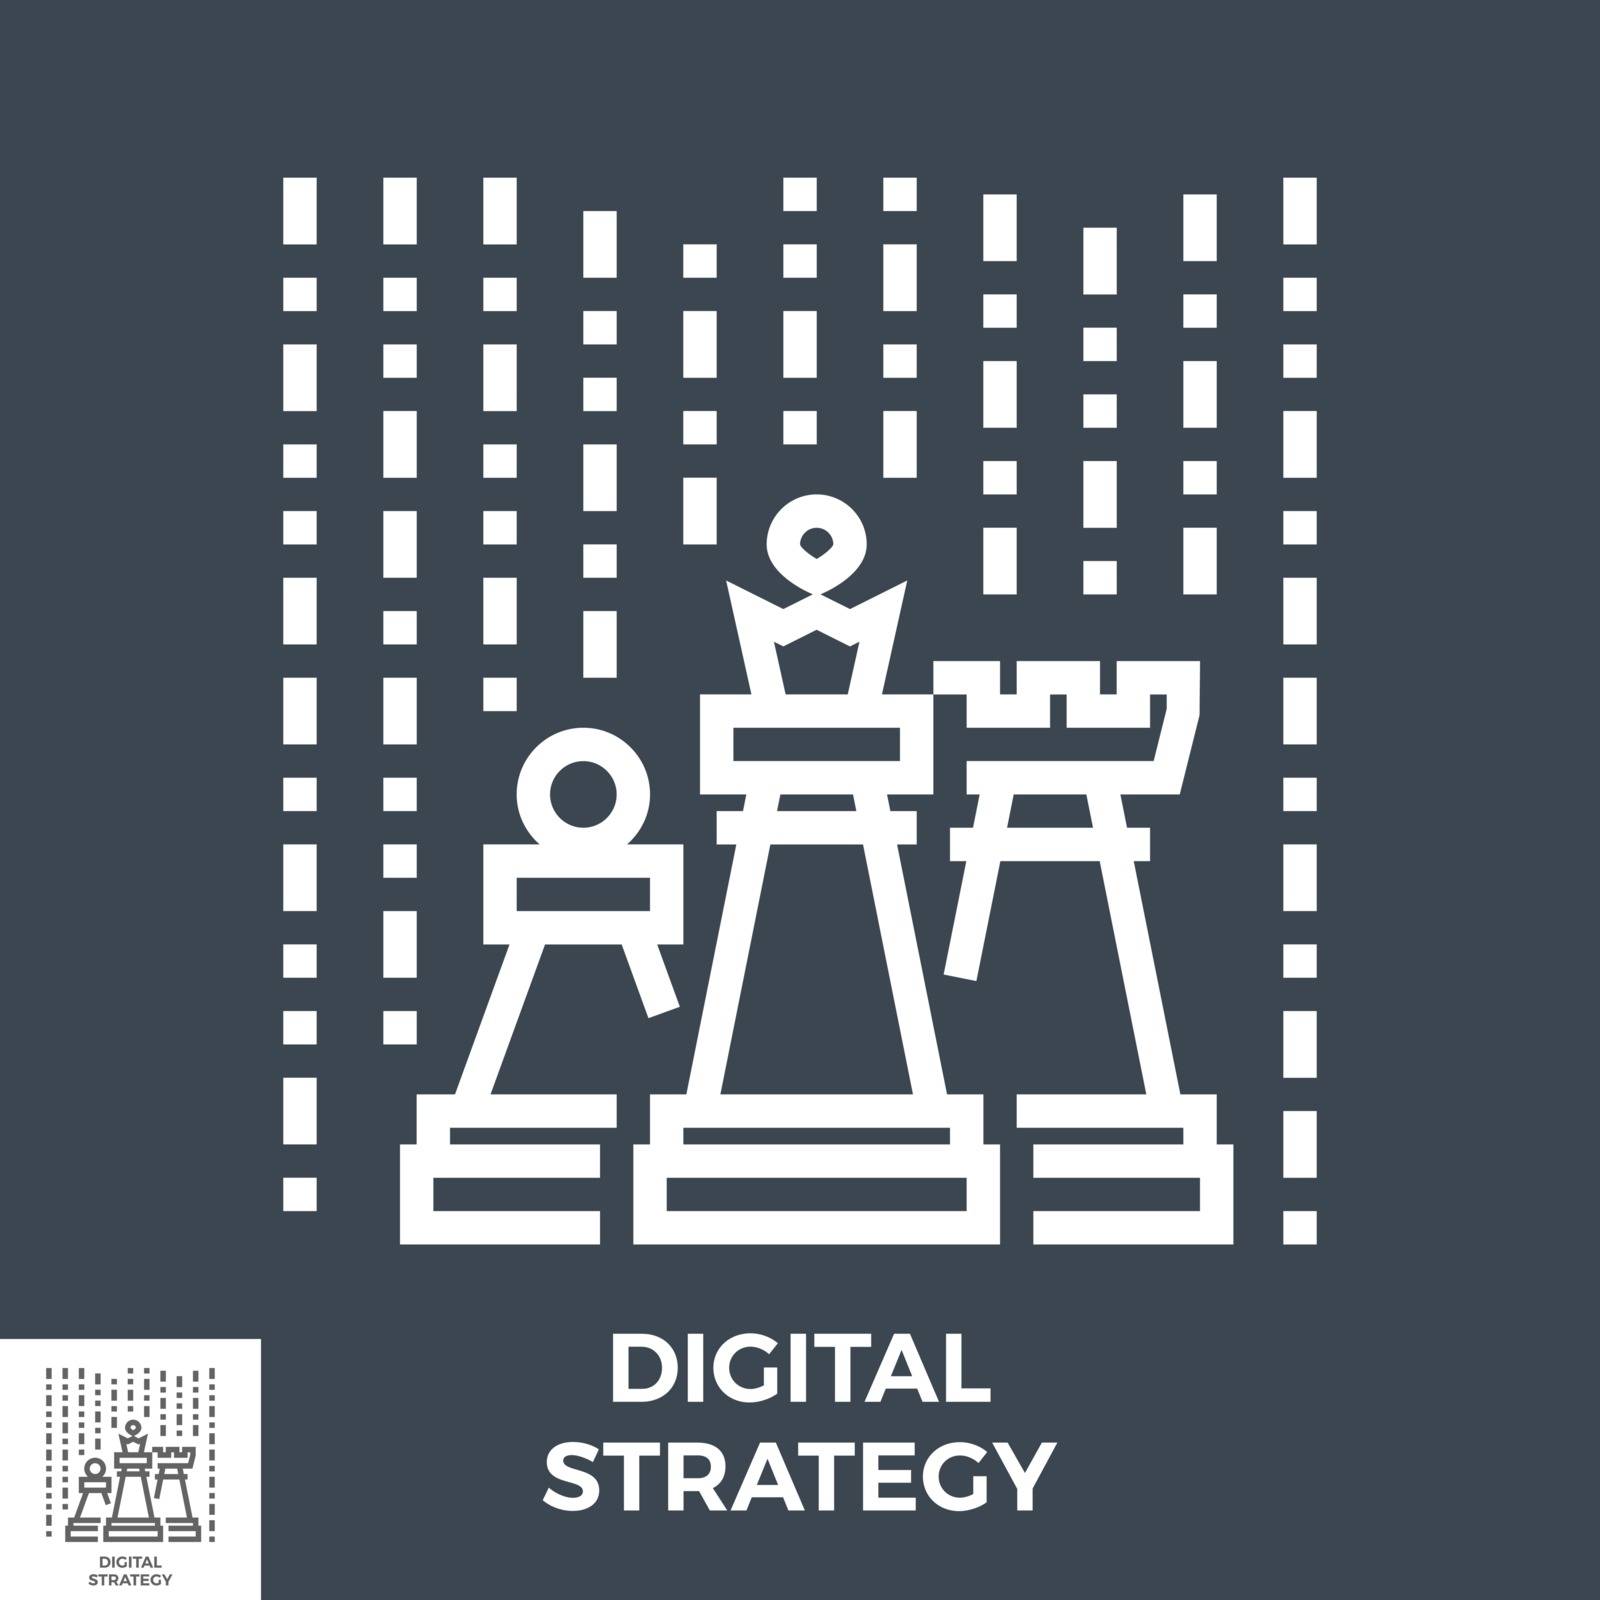 Digital strategy icon by smoki